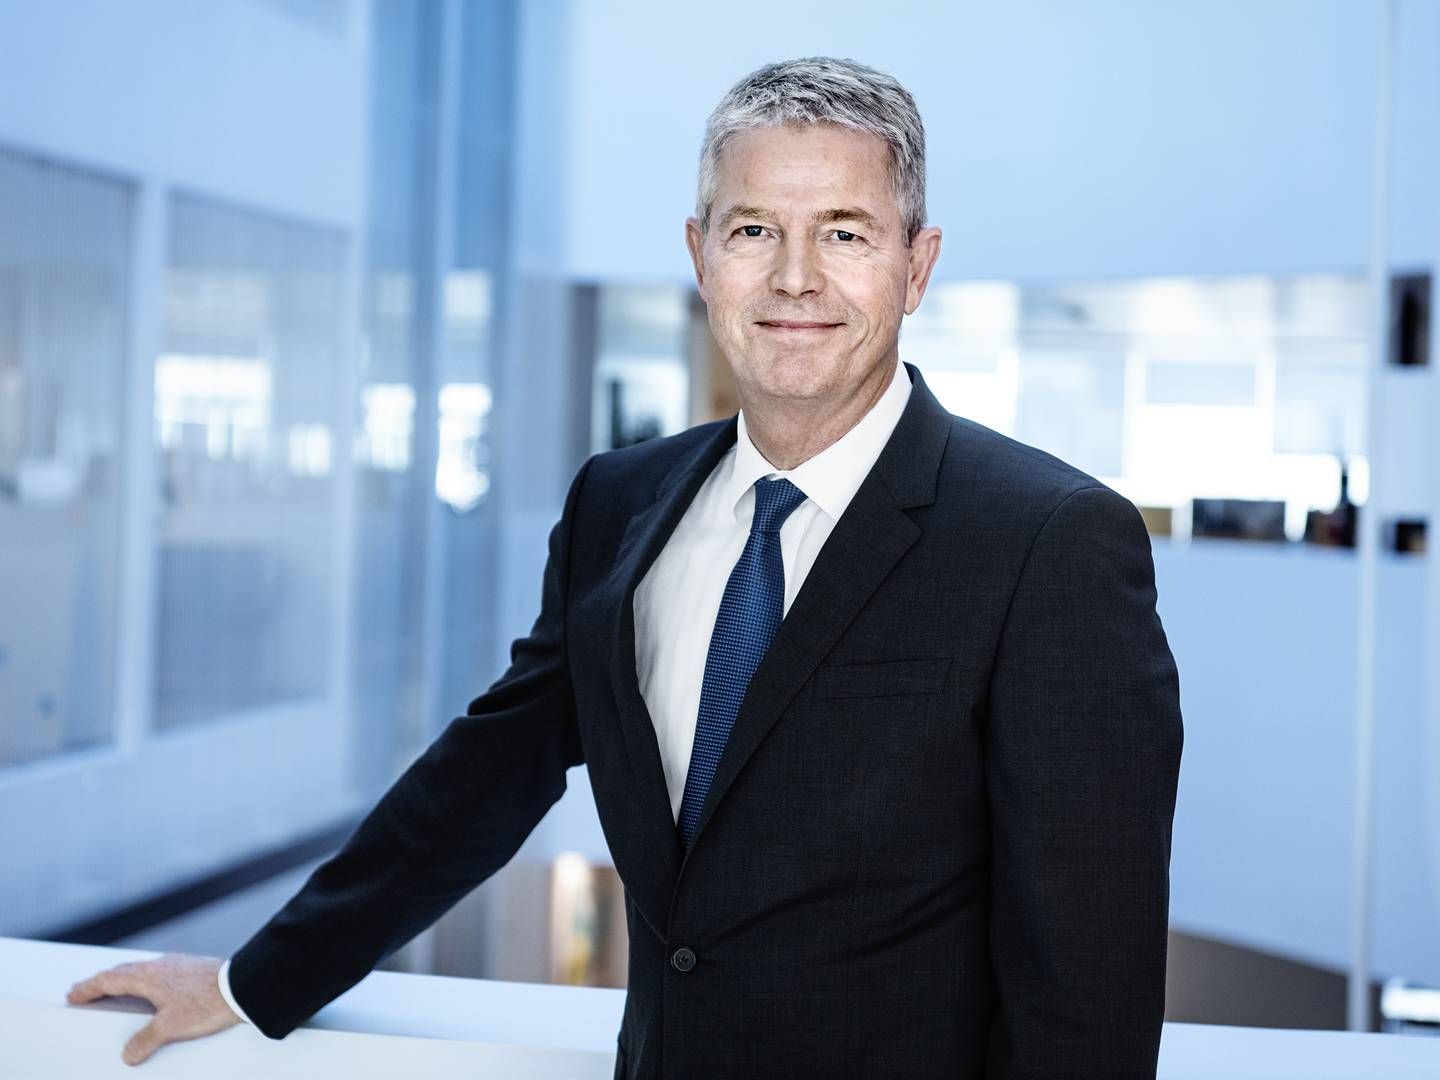 Adm. direktør i Sampension, Hasse Jørgensen, kan glæde sig over et godt investeringsår i 2021. | Foto: PR/Sampension